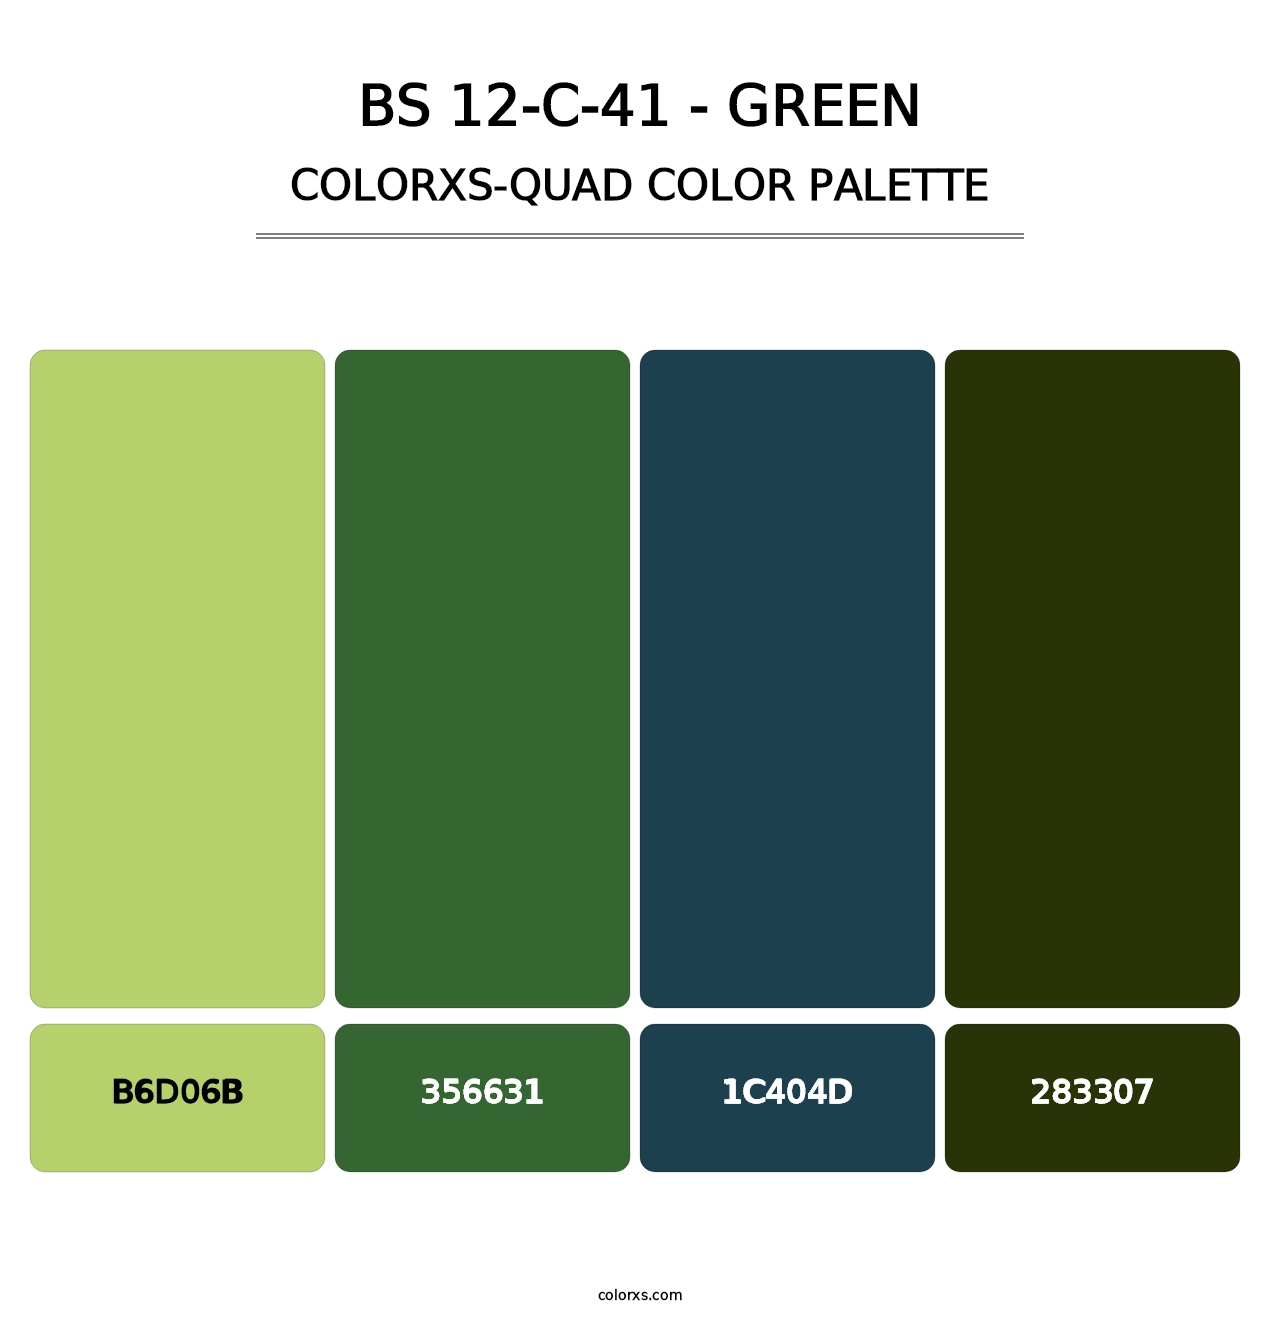 BS 12-C-41 - Green - Colorxs Quad Palette